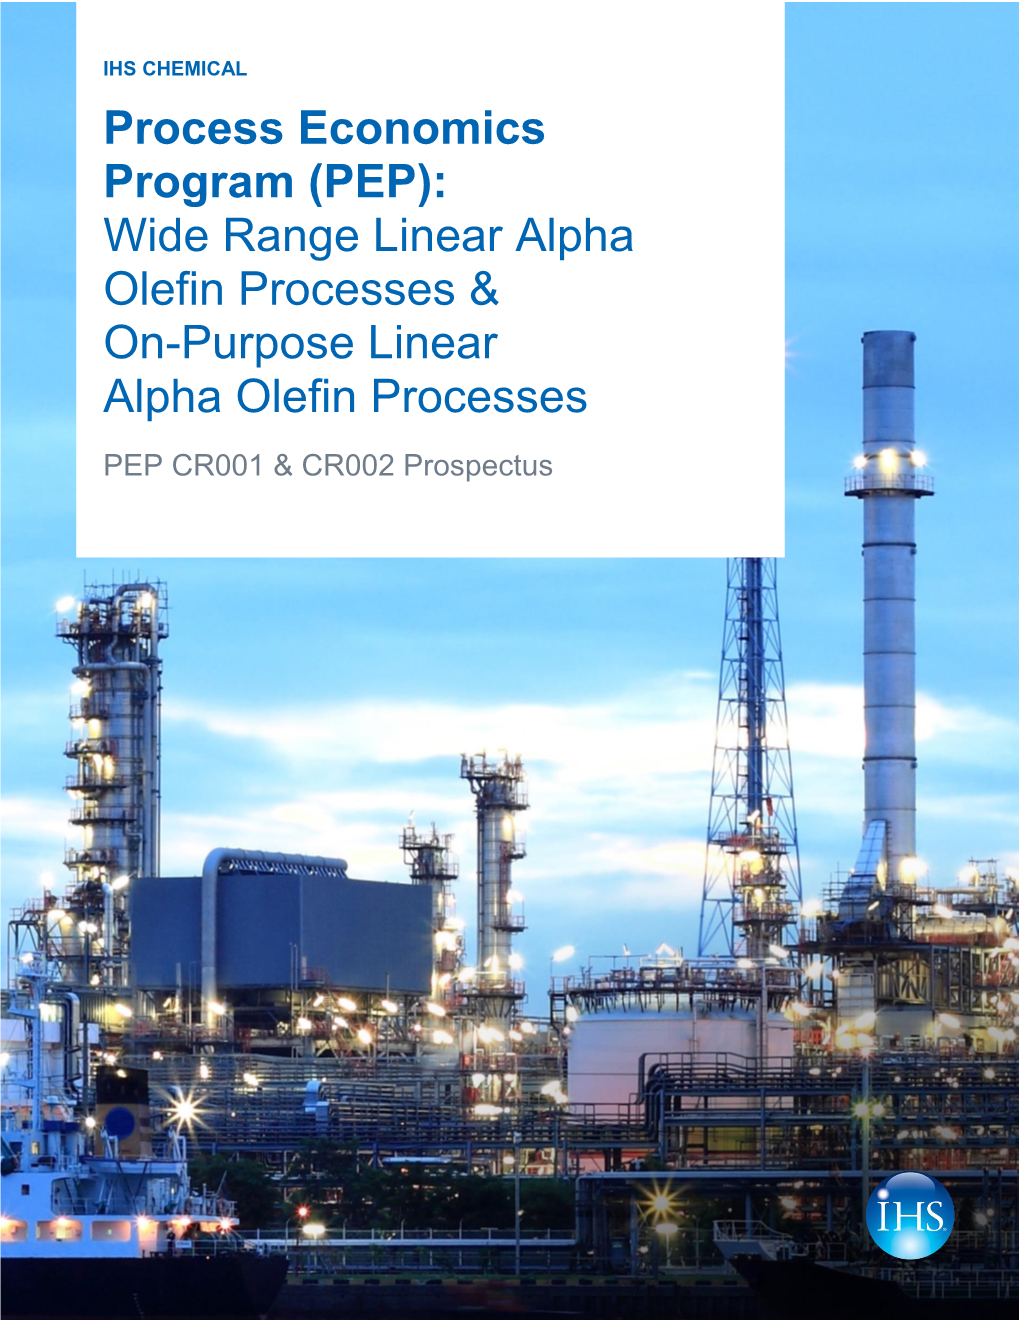 Process Economics Program (PEP): Wide Range Linear Alpha Olefin Processes & On-Purpose Linear Alpha Olefin Processes PEP CR001 & CR002 Prospectus